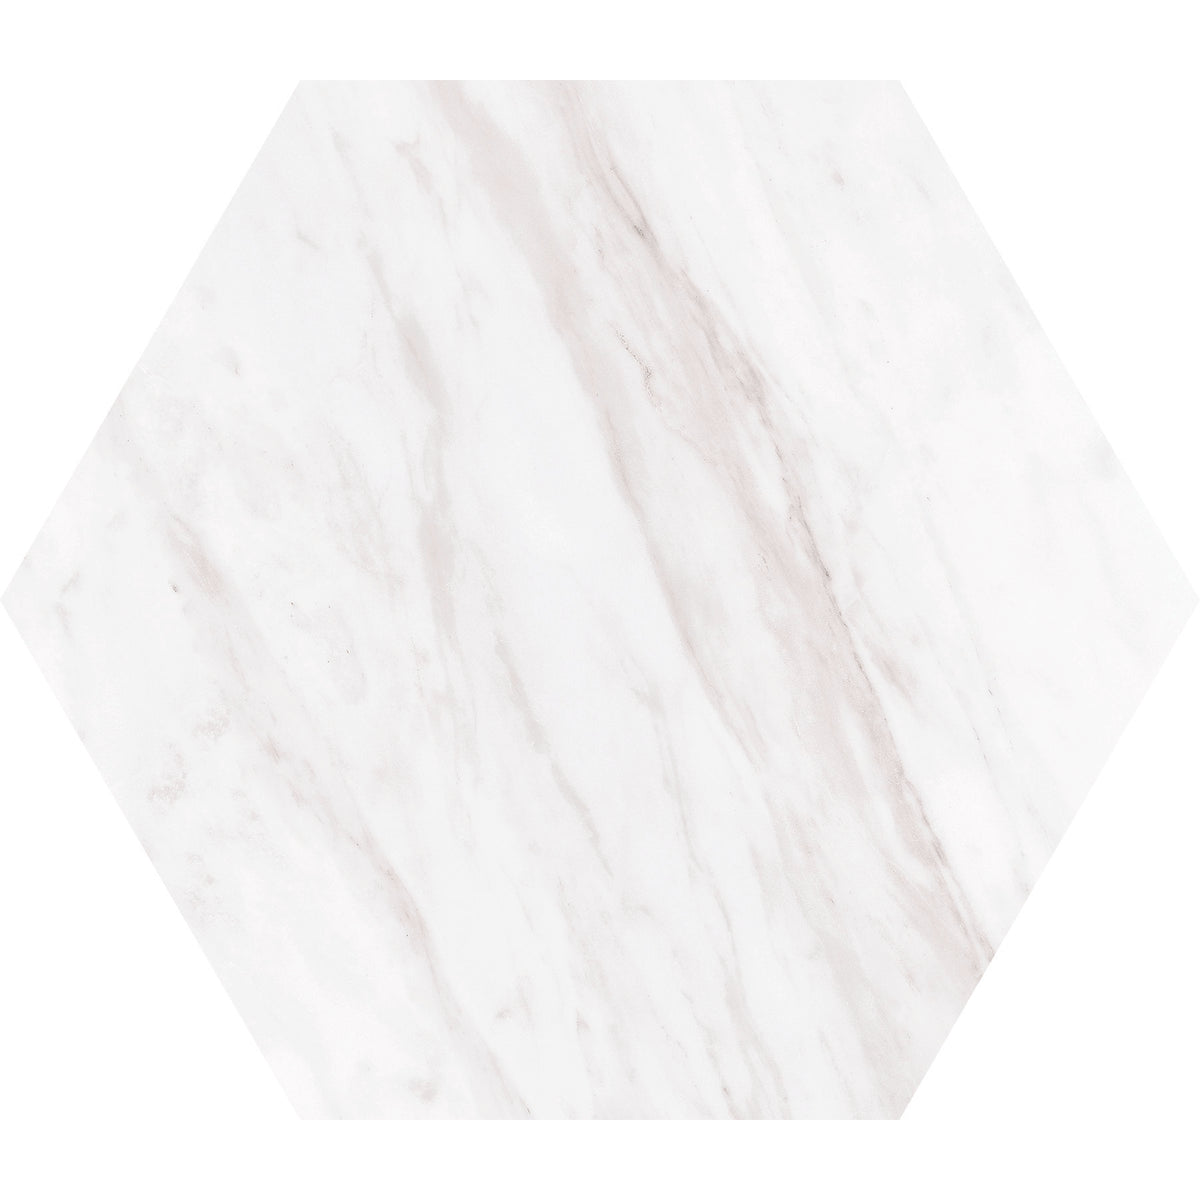 Daltile - Perpetuo - 8 in. Hexagon Glazed Porcelain Floor Tile - Timeless White Matte